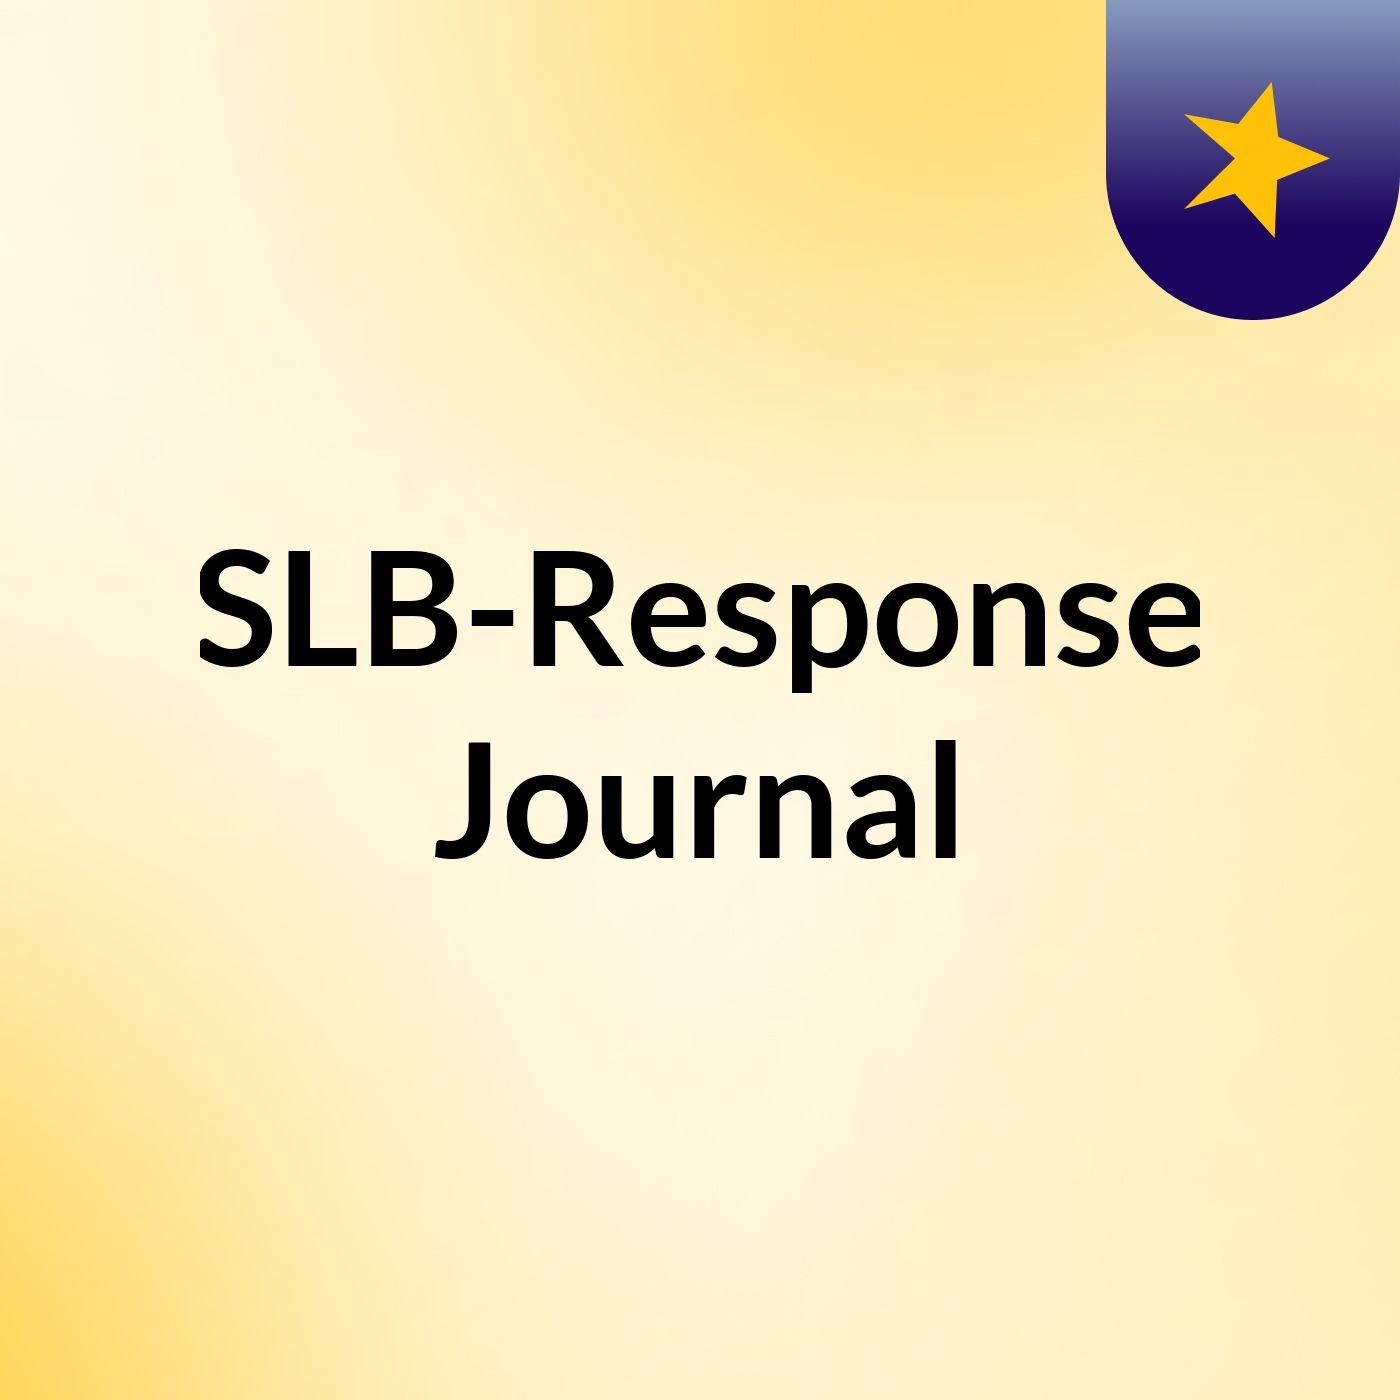 Episode 6 - SLB-Response Journal